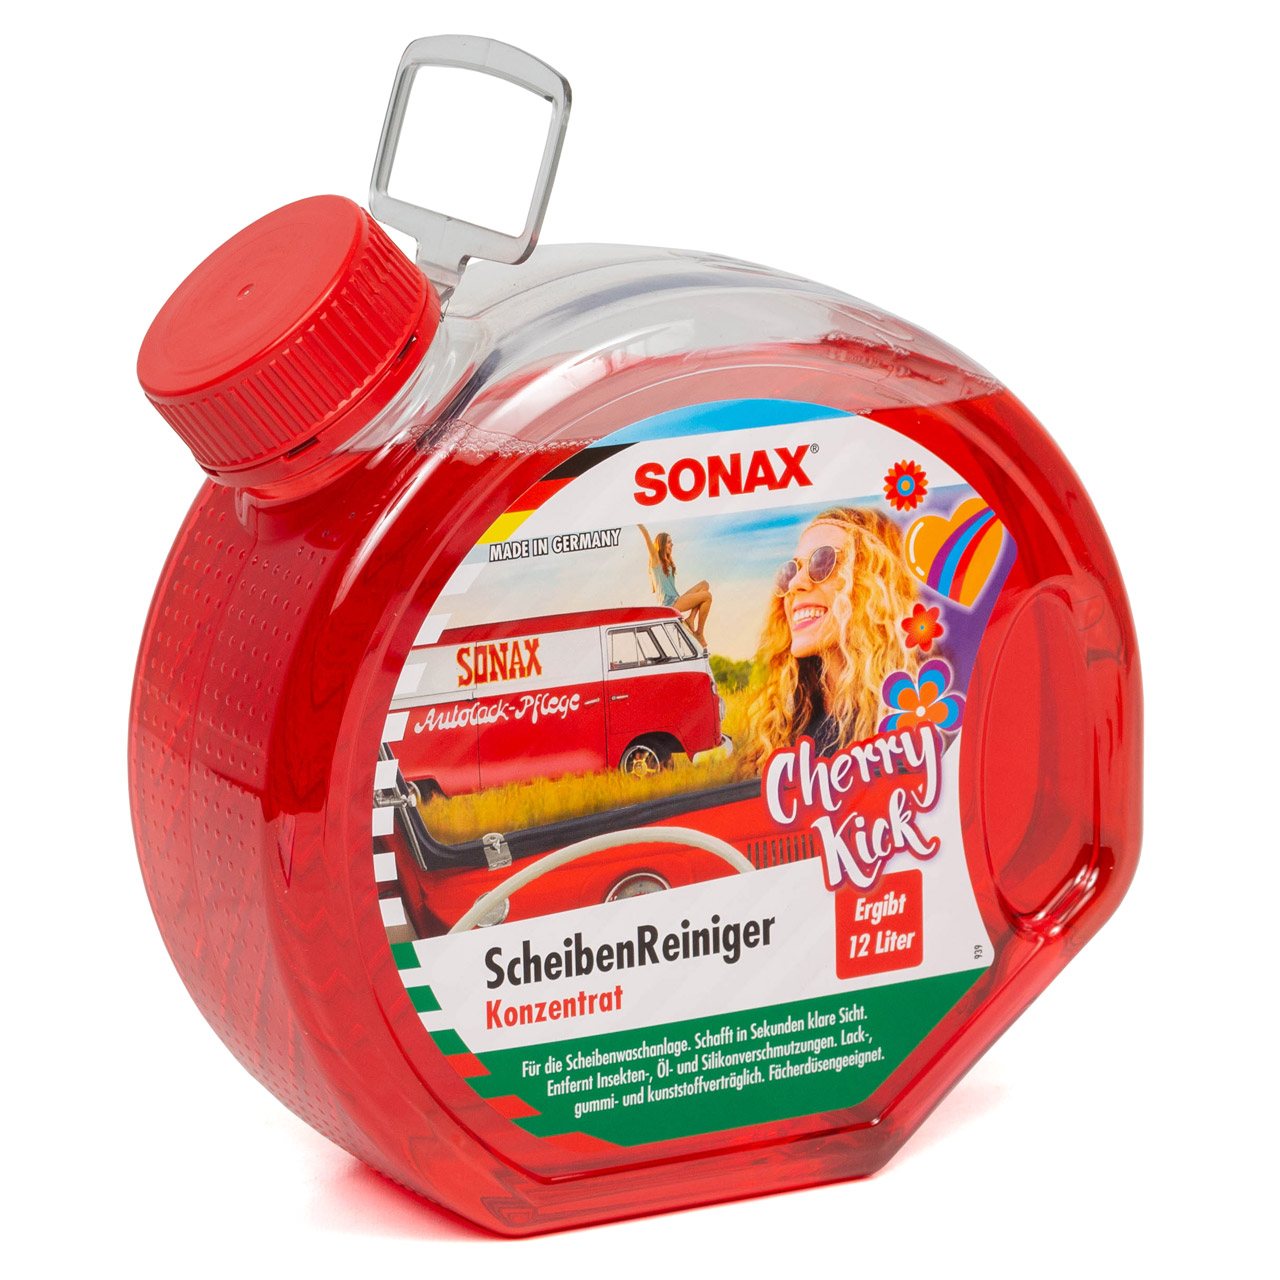 SONAX 392400 Scheibenreiniger Scheibenklar Glasreiniger Reiniger Cherry Kick 3L 3 Liter